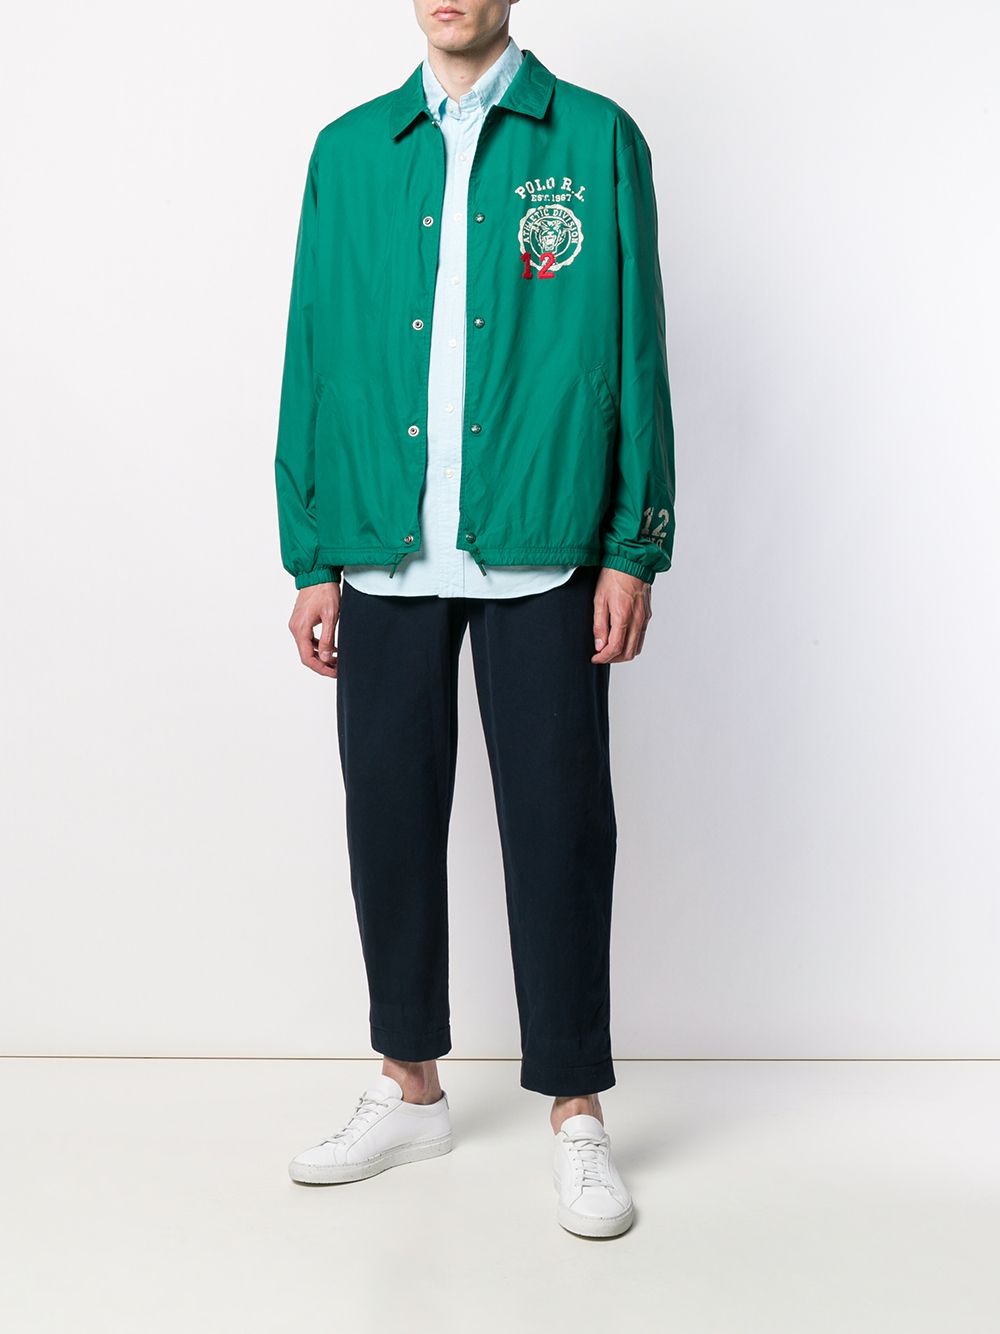 фото Polo Ralph Lauren легкая куртка с логотипом